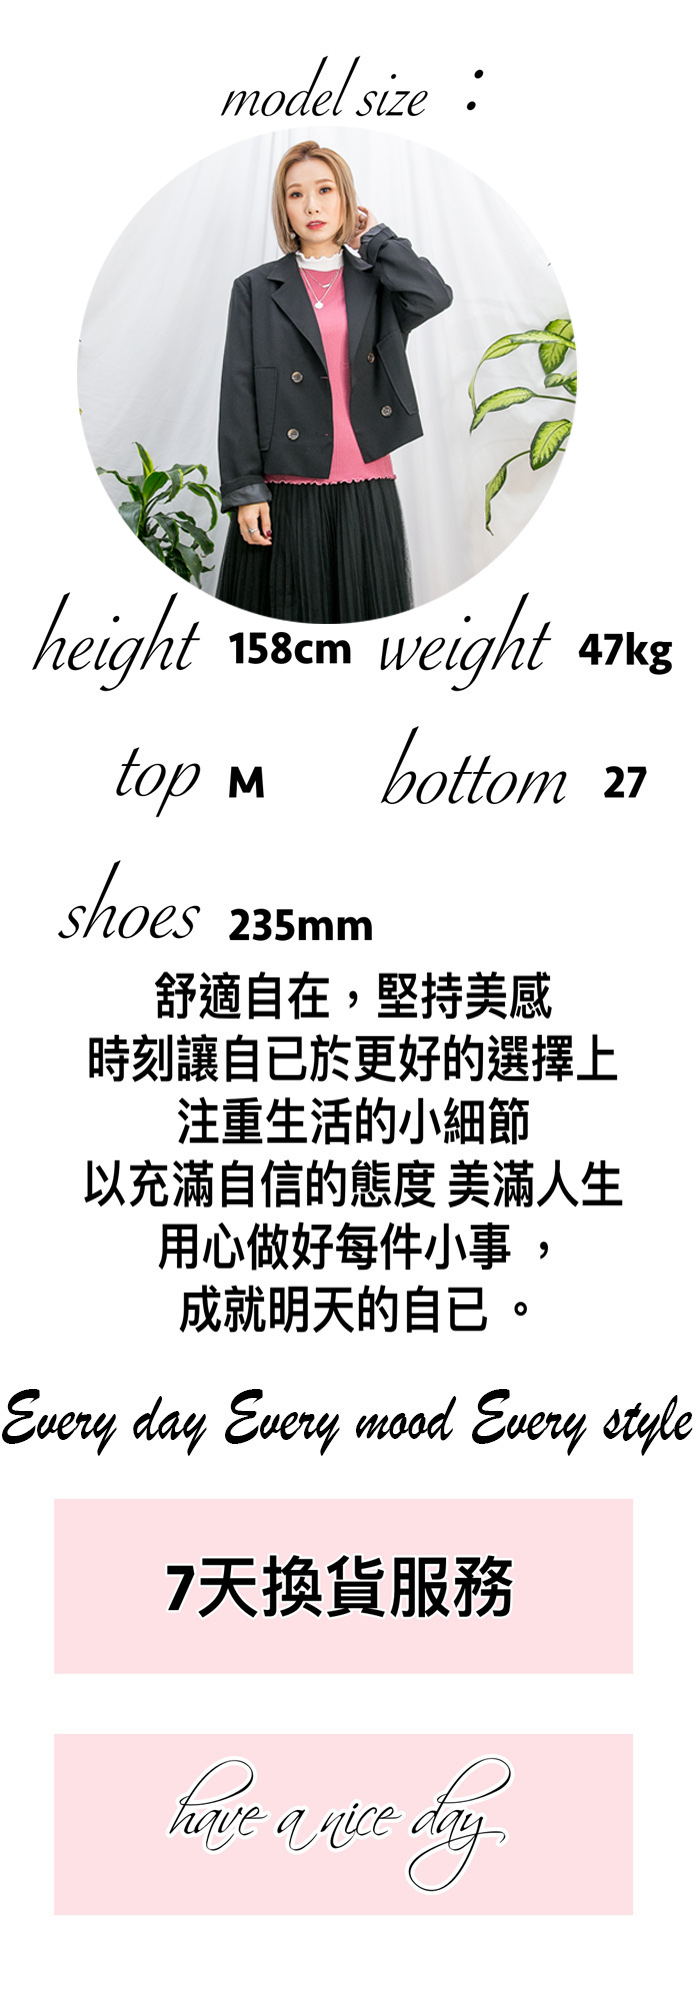 2115-1294-size S-拼色・型格 -後腰橡根 X 前腰扣鈕 , 兩側袋 X 腳位SOSO邊 , 兩旁拼色直腳牛仔褲 (韓國) 